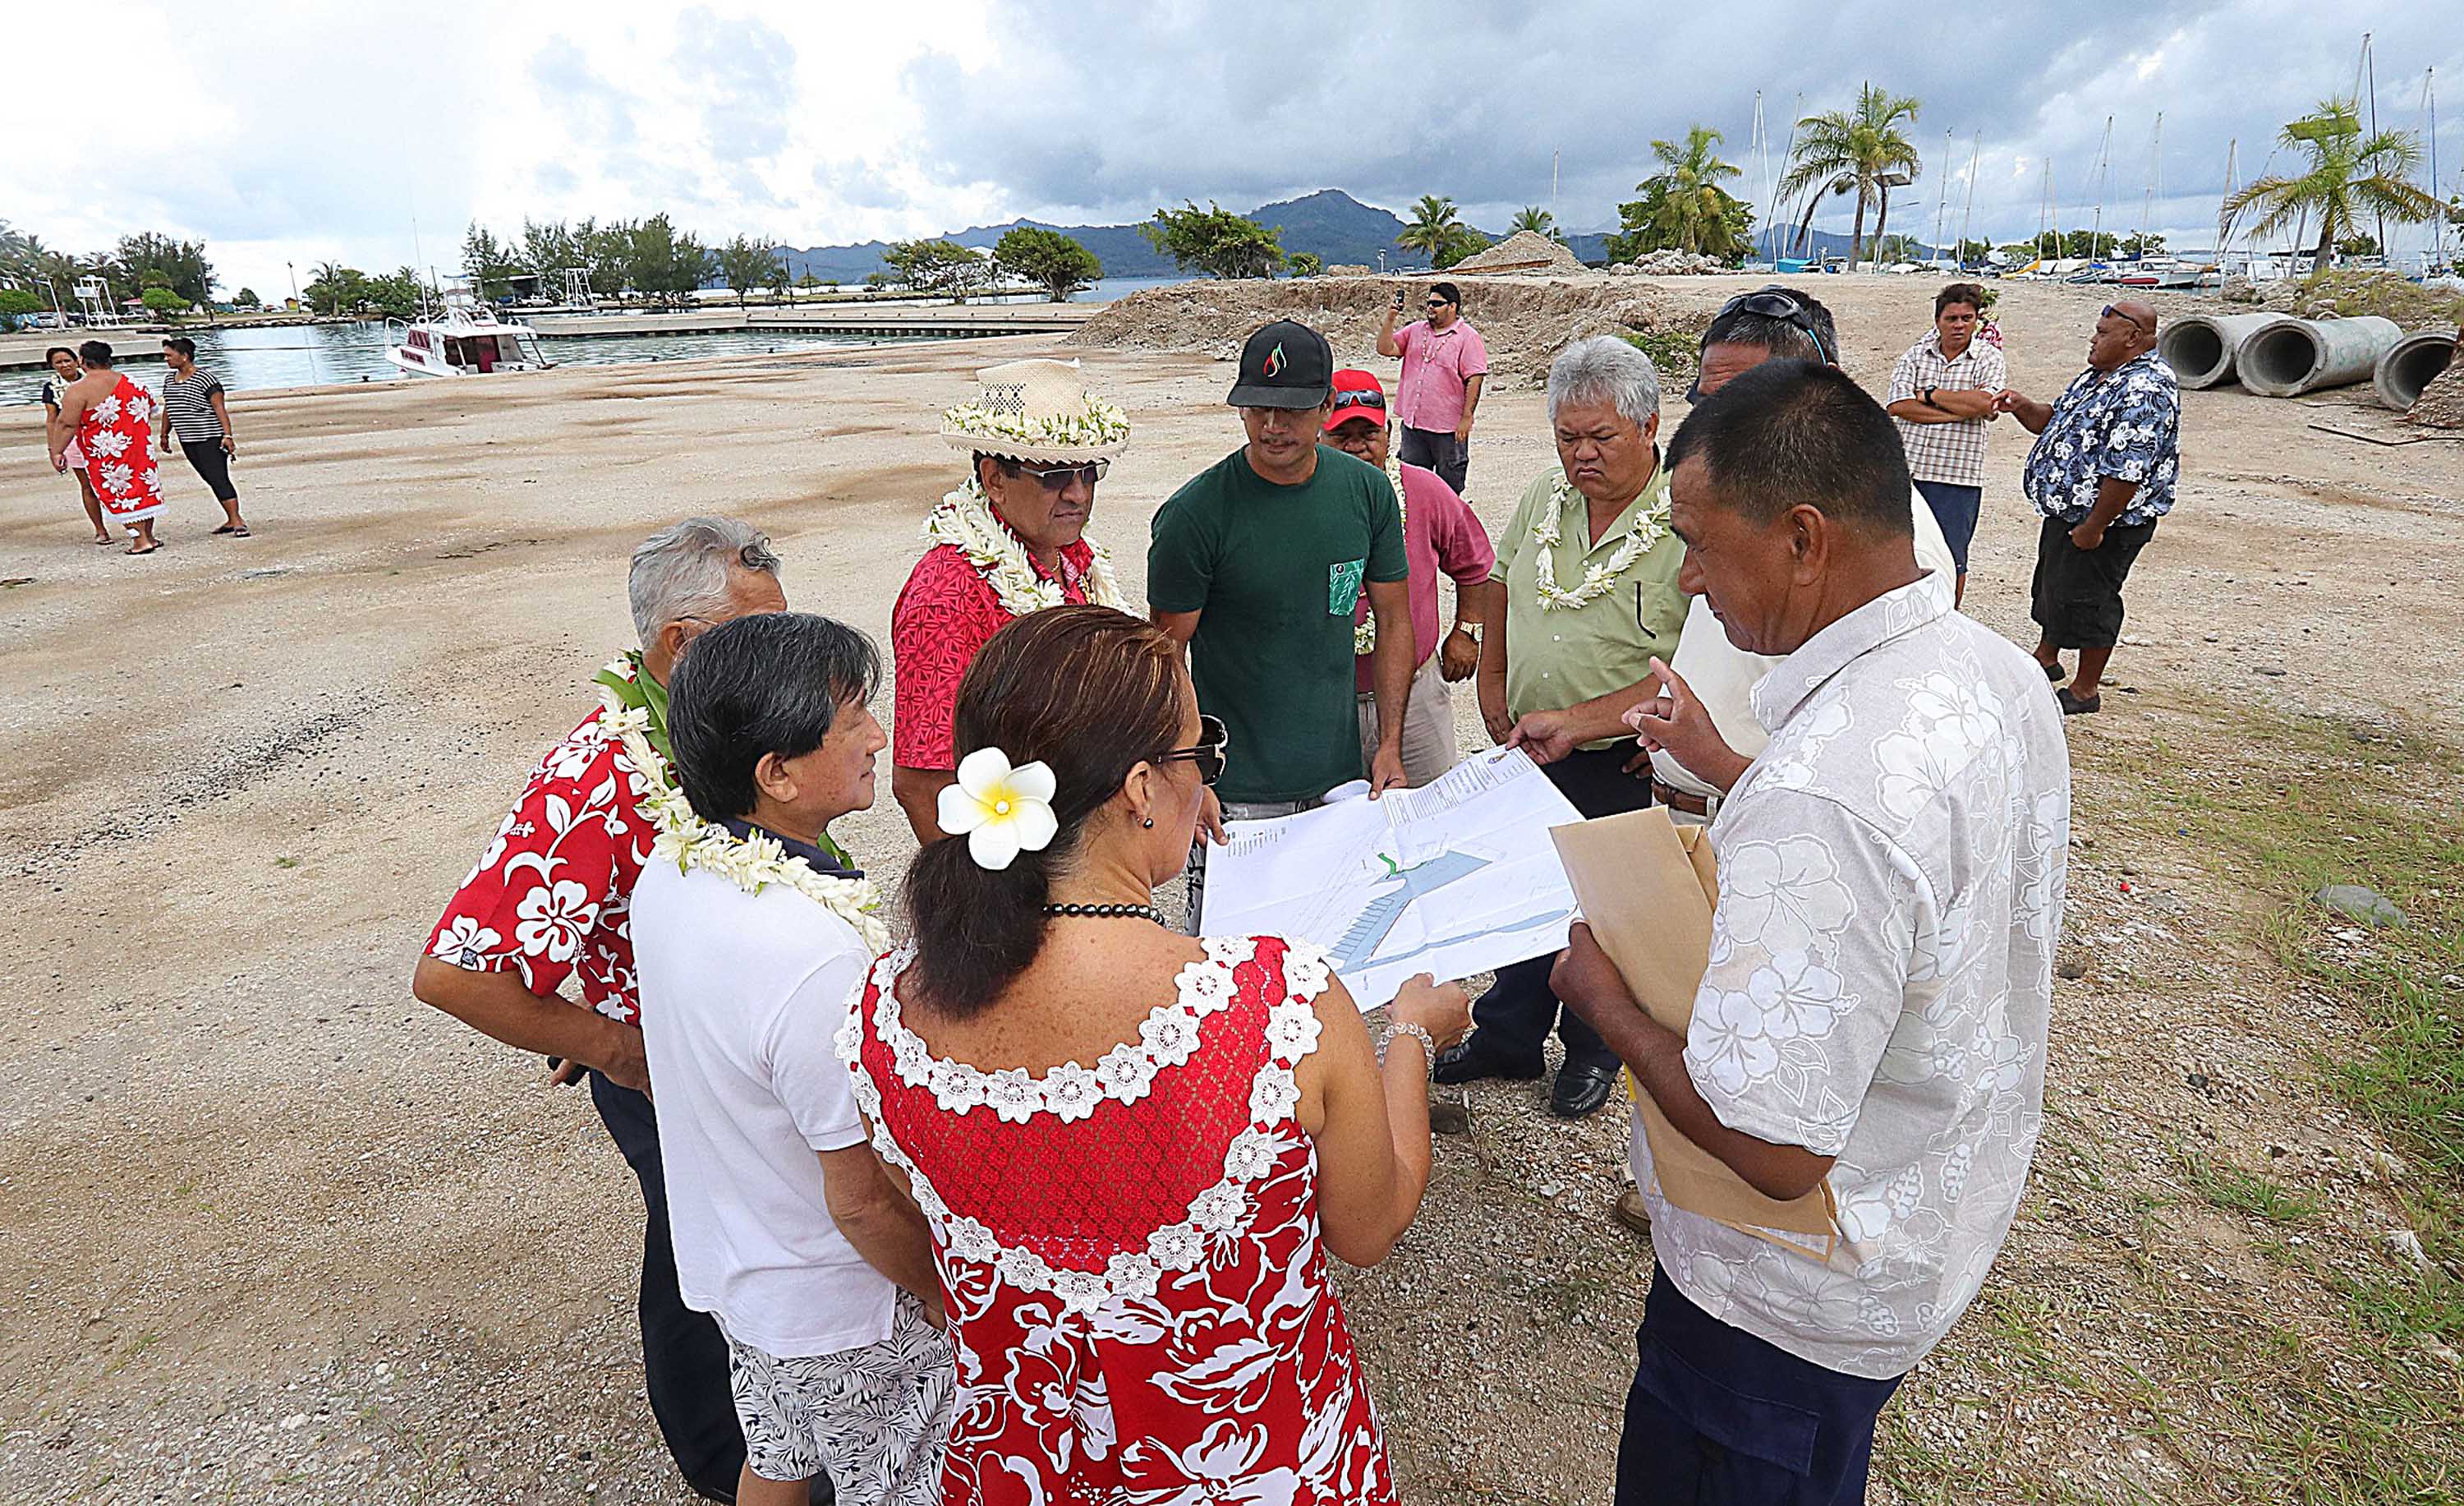 Les pêcheurs des trois communes de Raiatea ont été invités pour discuter de l'utilisation et de la gestion des quais et marinas du Pays, situés à Uturoa.